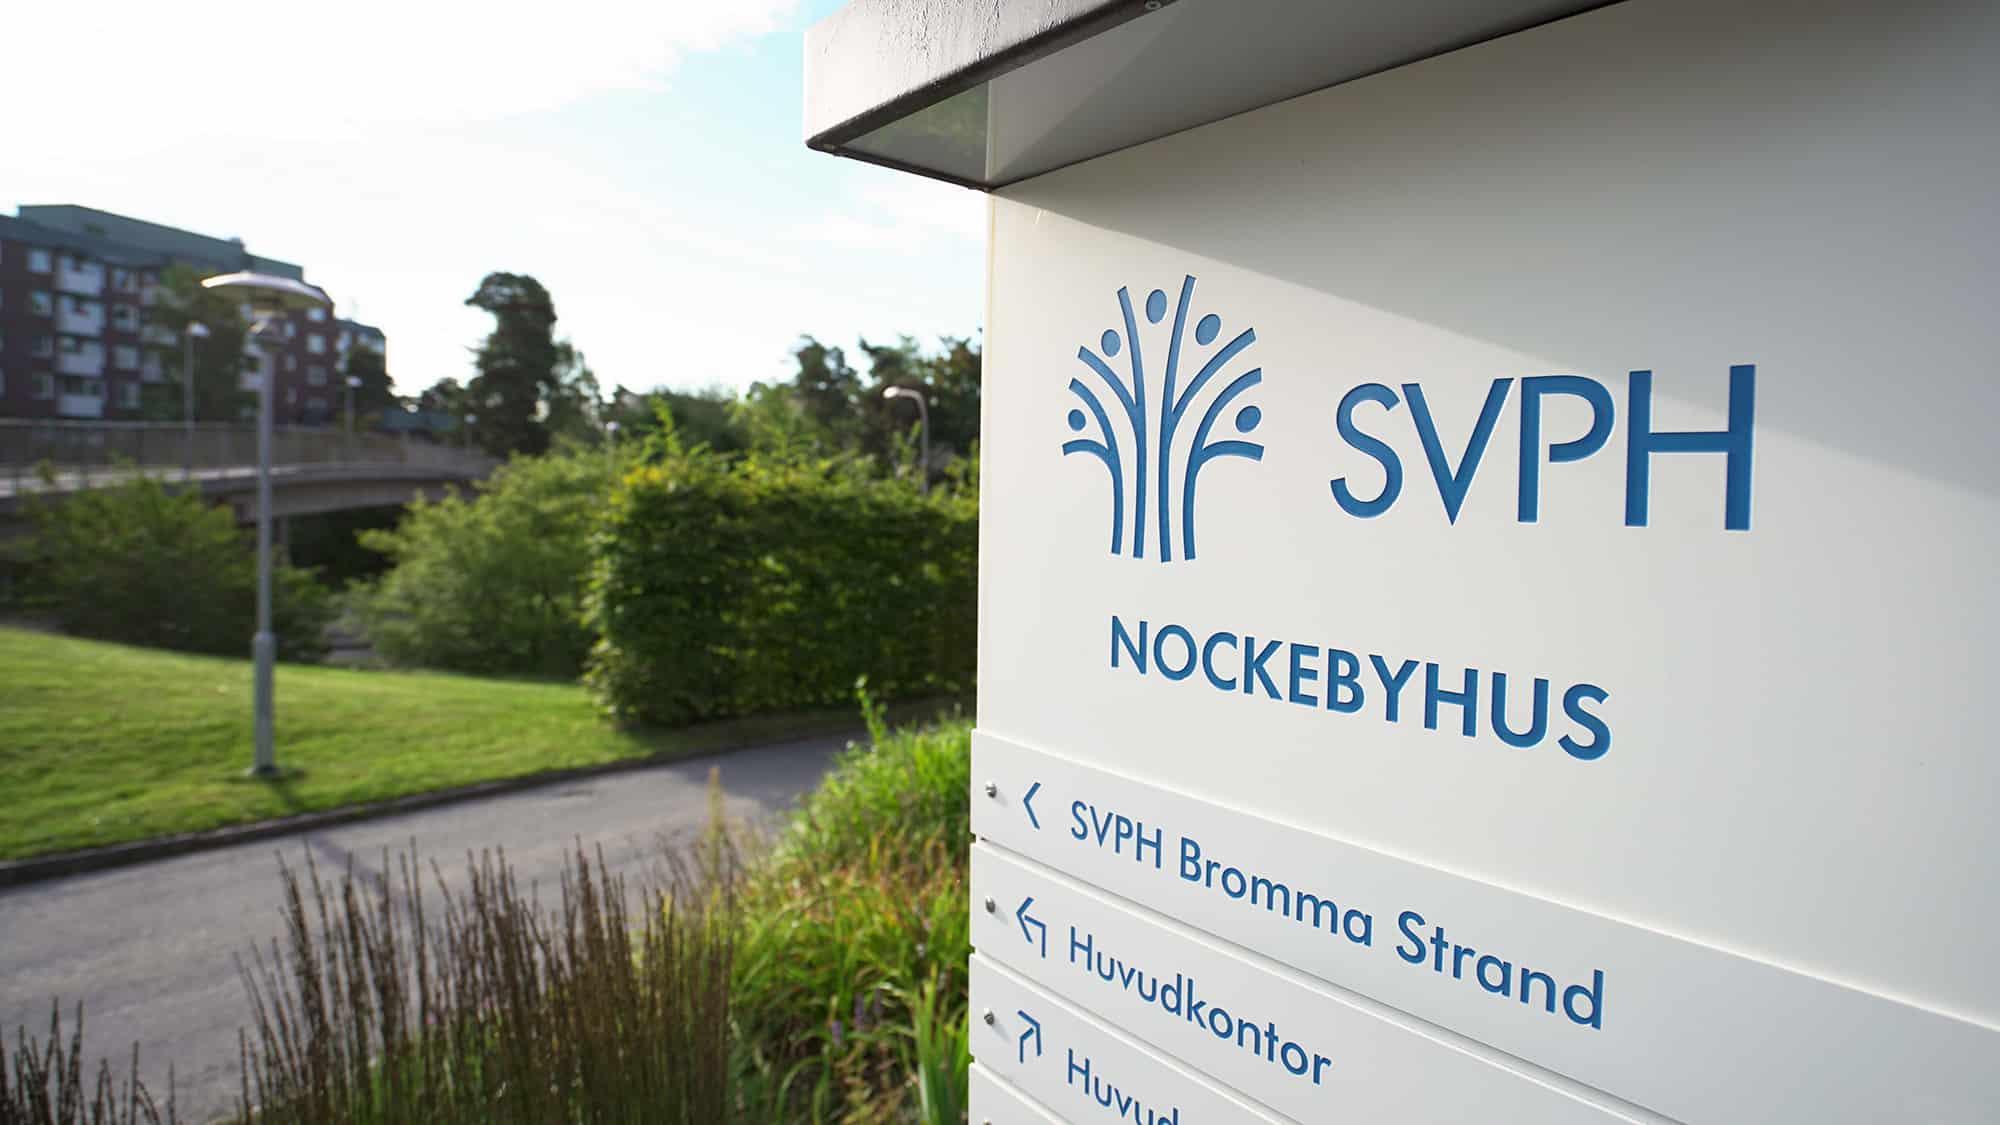 SVPH - Lägenehter - Seniorboende +55 - Fredhäll - Bromma Strand - Nockebyhus - Ställ dig i kö